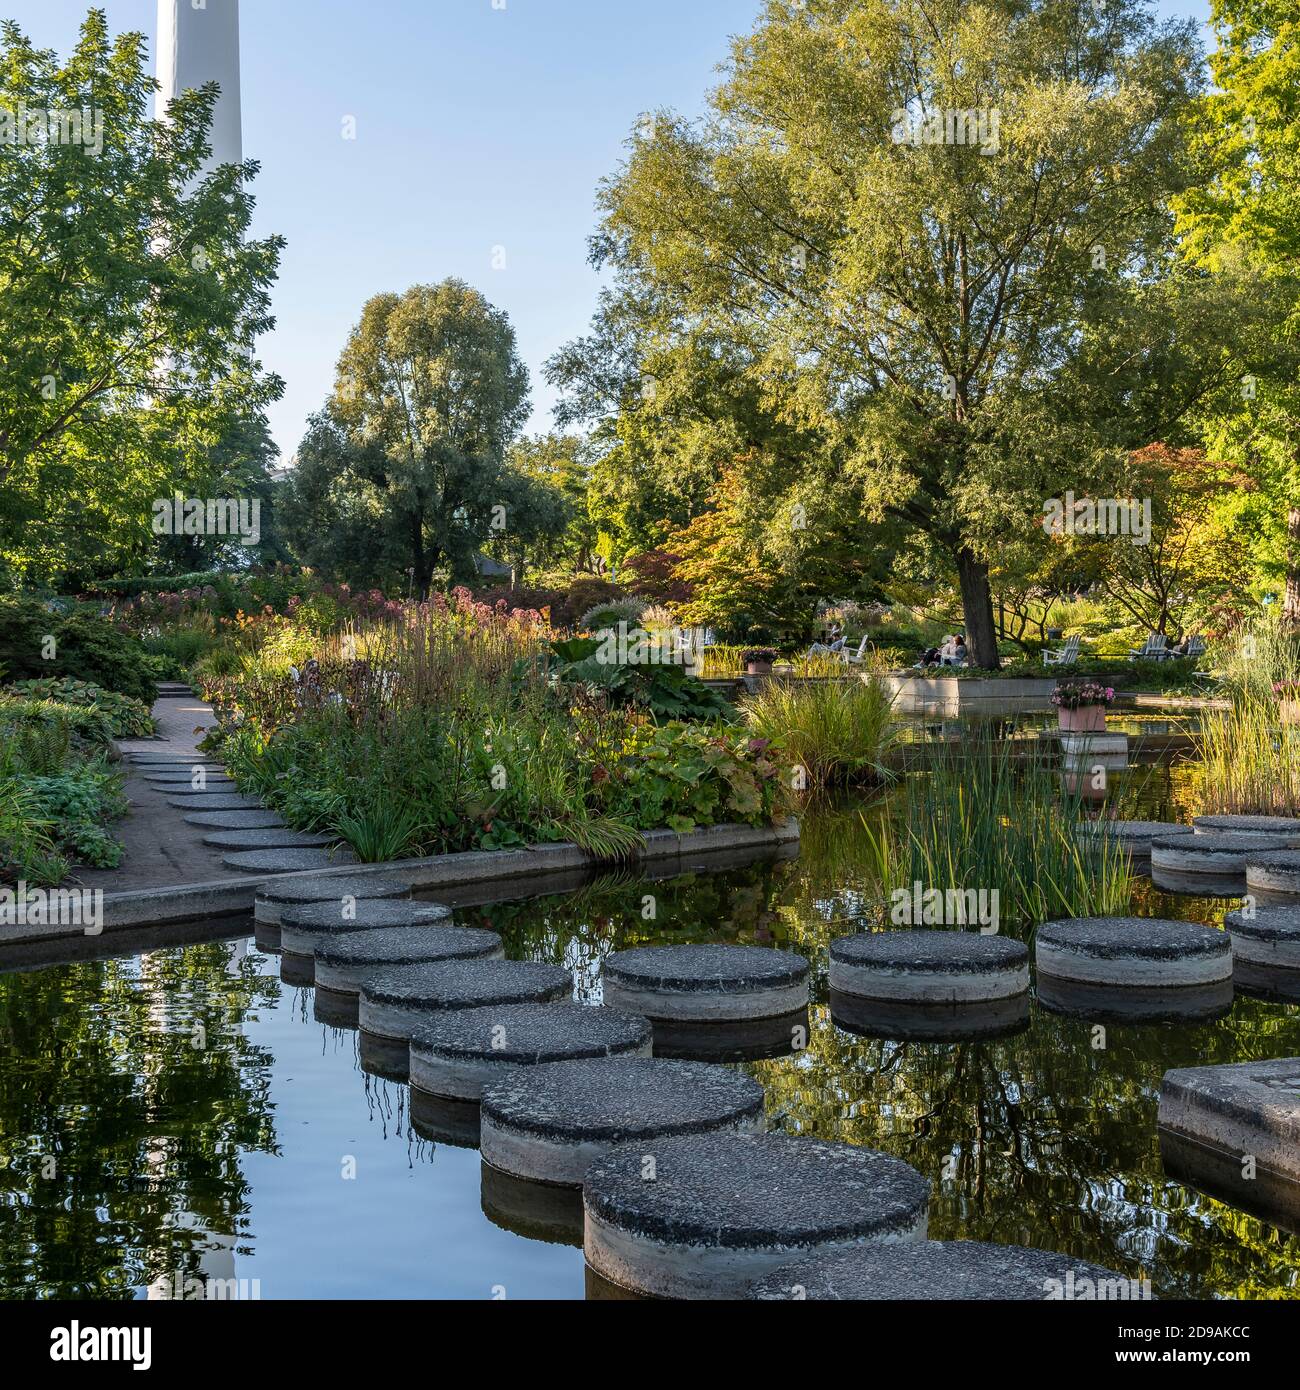 Planten un Blomen ist ein großer Stadtpark in Hamburg. Der Name Planten un Blomen bedeutet "Pflanzen und Blumen" im Englischen. Stockfoto